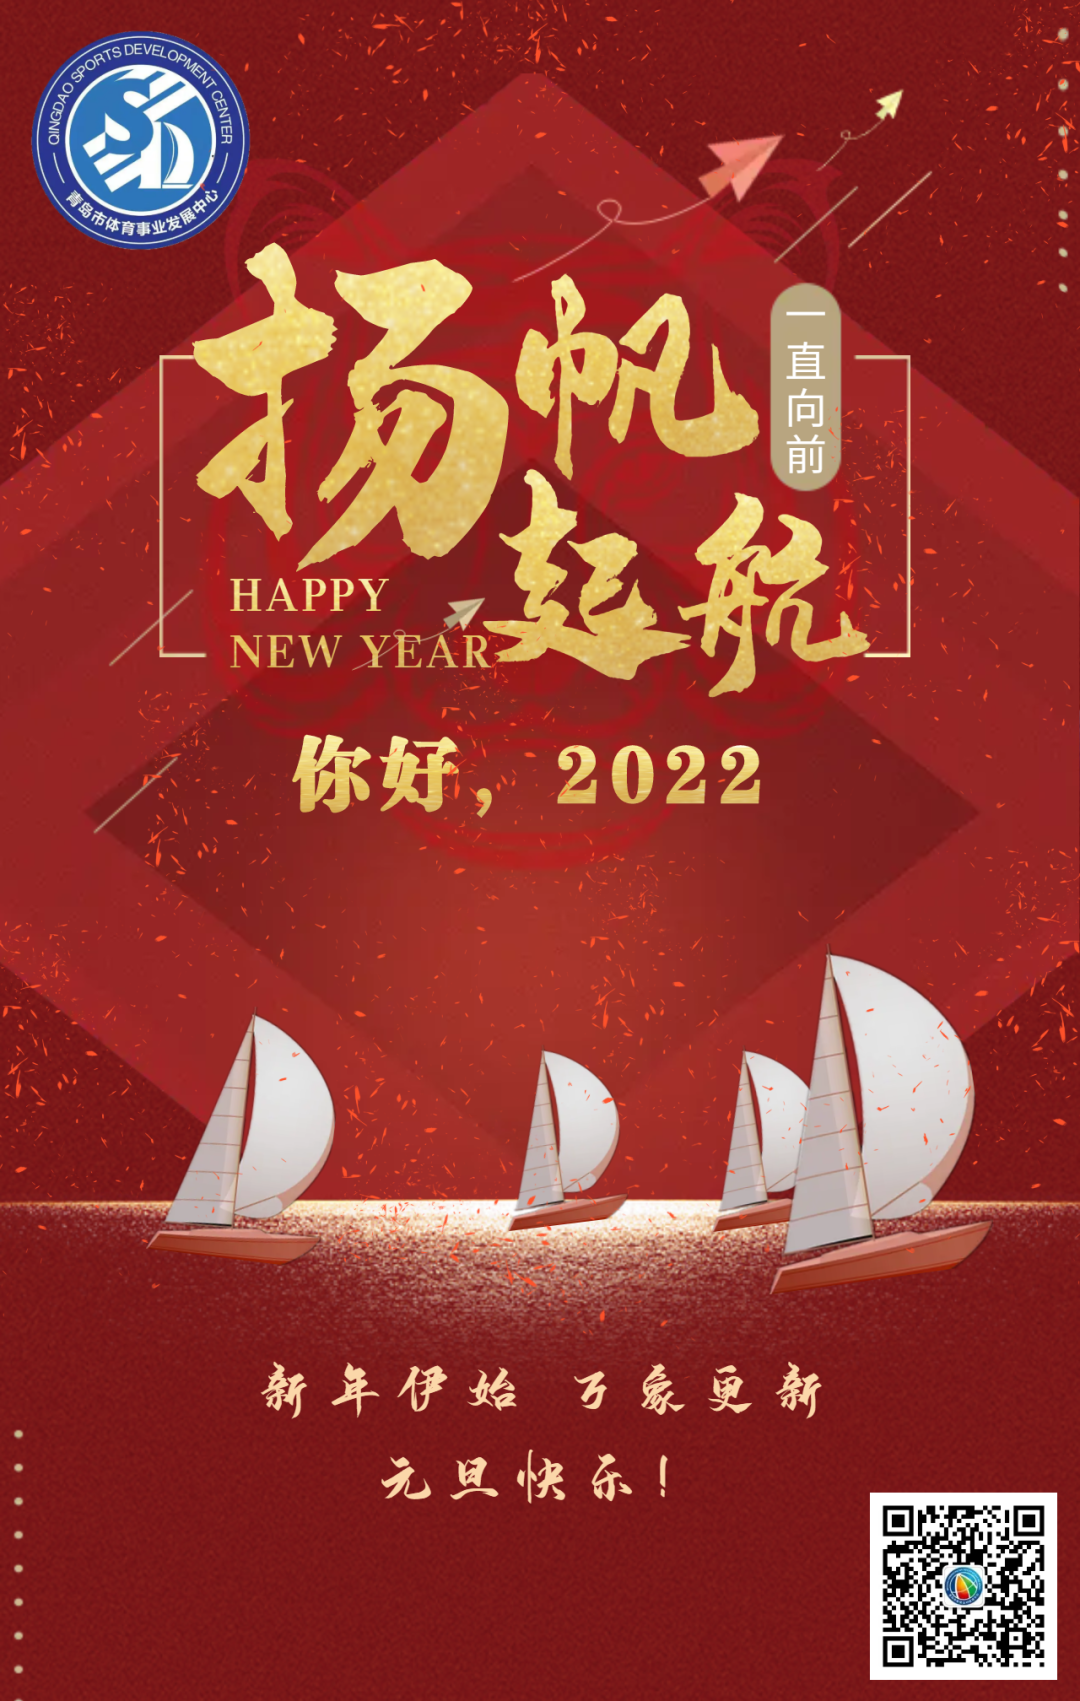 再见2021你好2022帆船之都青岛祝您元旦快乐扬帆起航